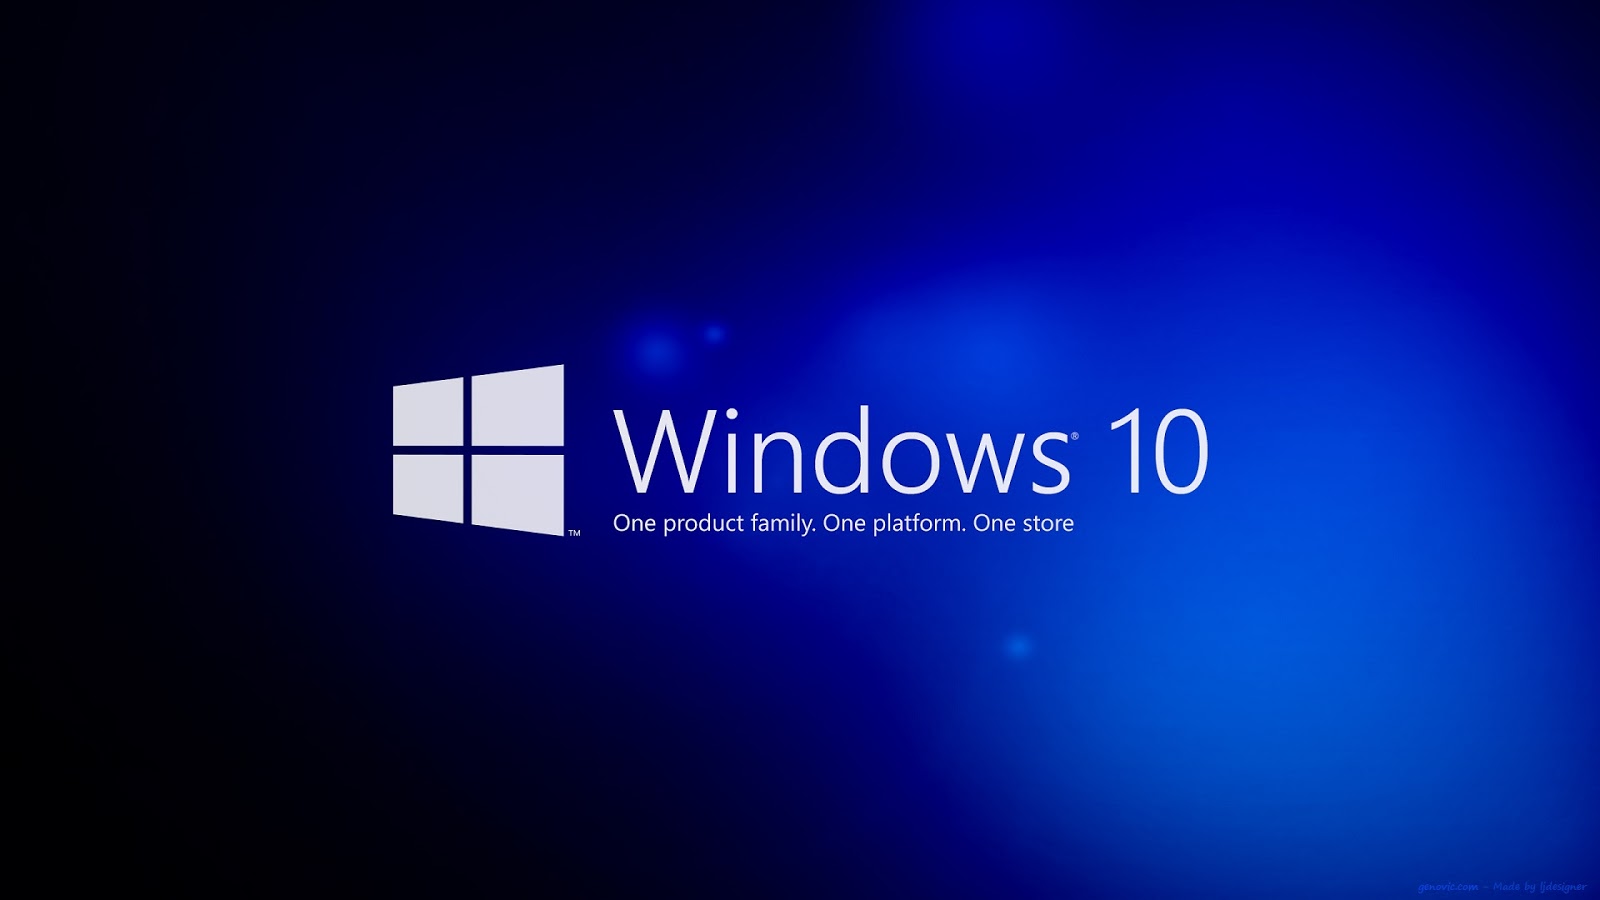 Instalando o Windows 10 passo a passo   artigos TechNet   Brasil